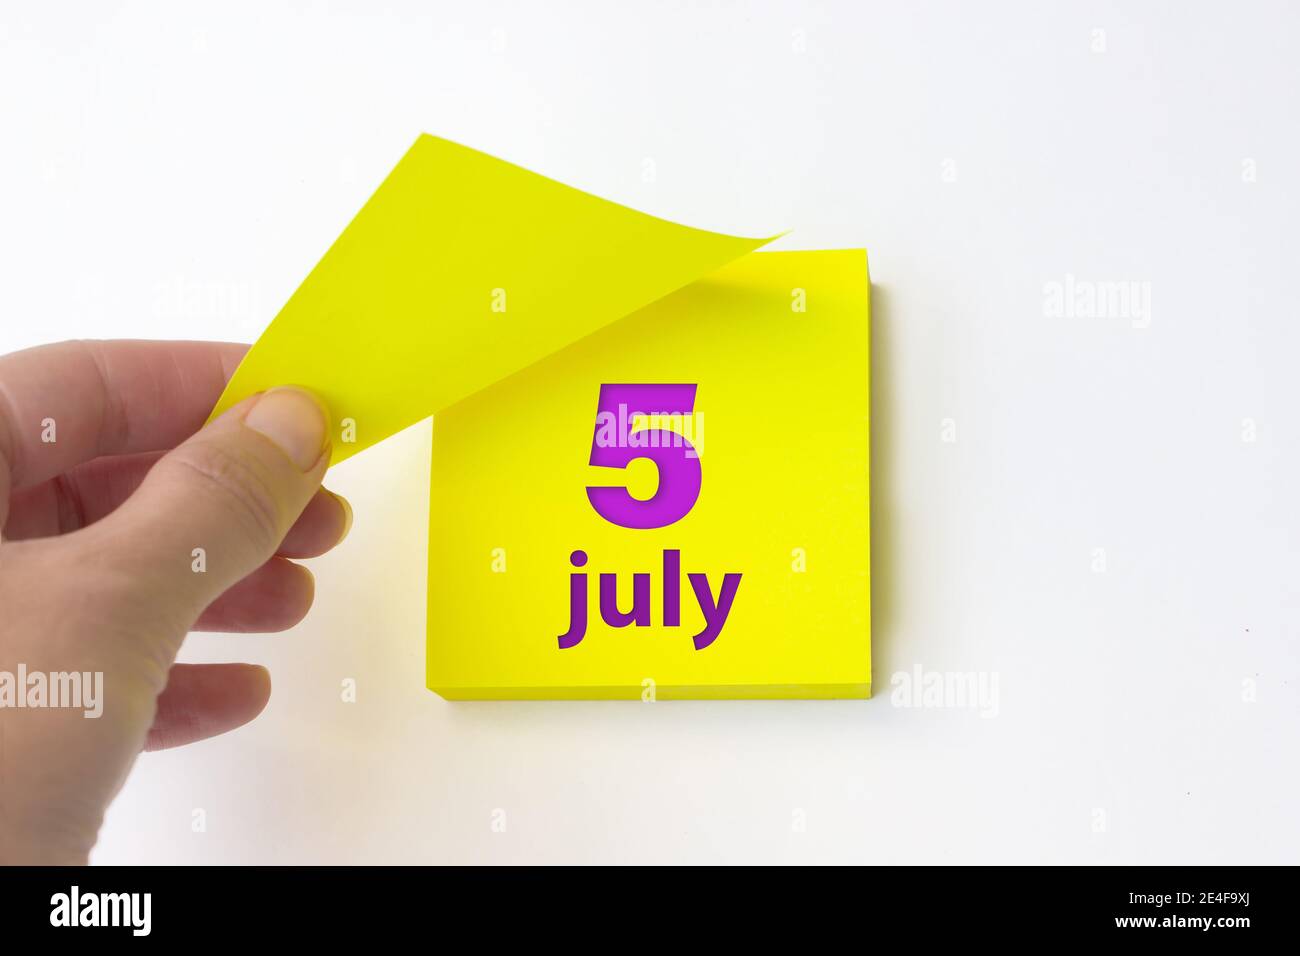 Juli. Tag 5 des Monats, Kalenderdatum. Die Hand reißt das gelbe Blatt des Kalenders ab. Sommer Monat, Tag des Jahres Konzept Stockfoto